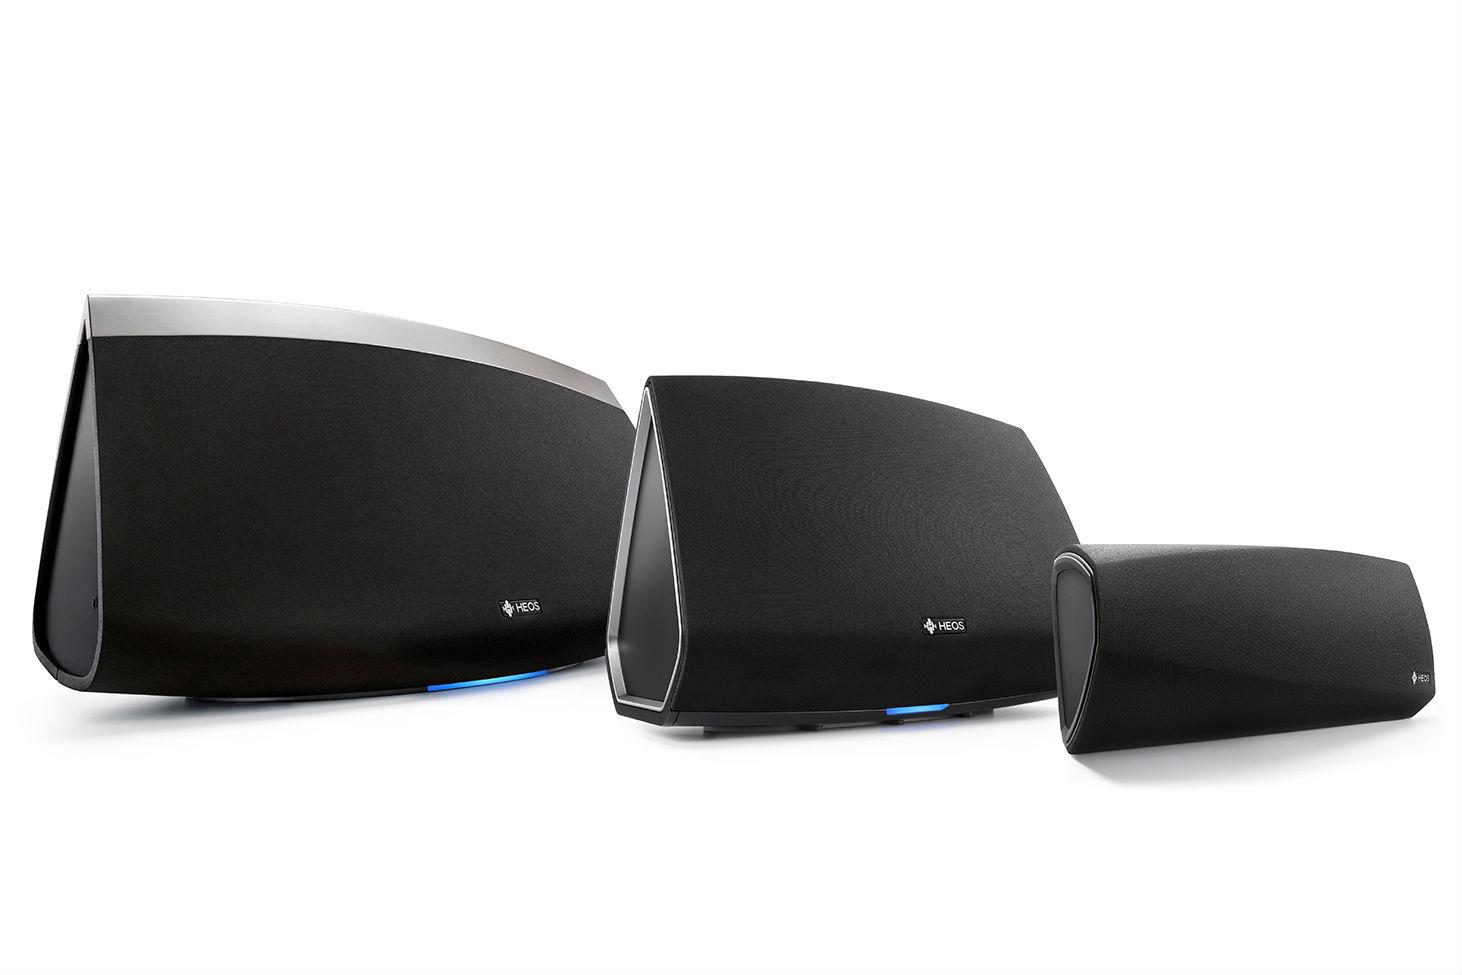 denon takes sonos new heos wireless speaker series 131109 7 5 3 familyshot edit